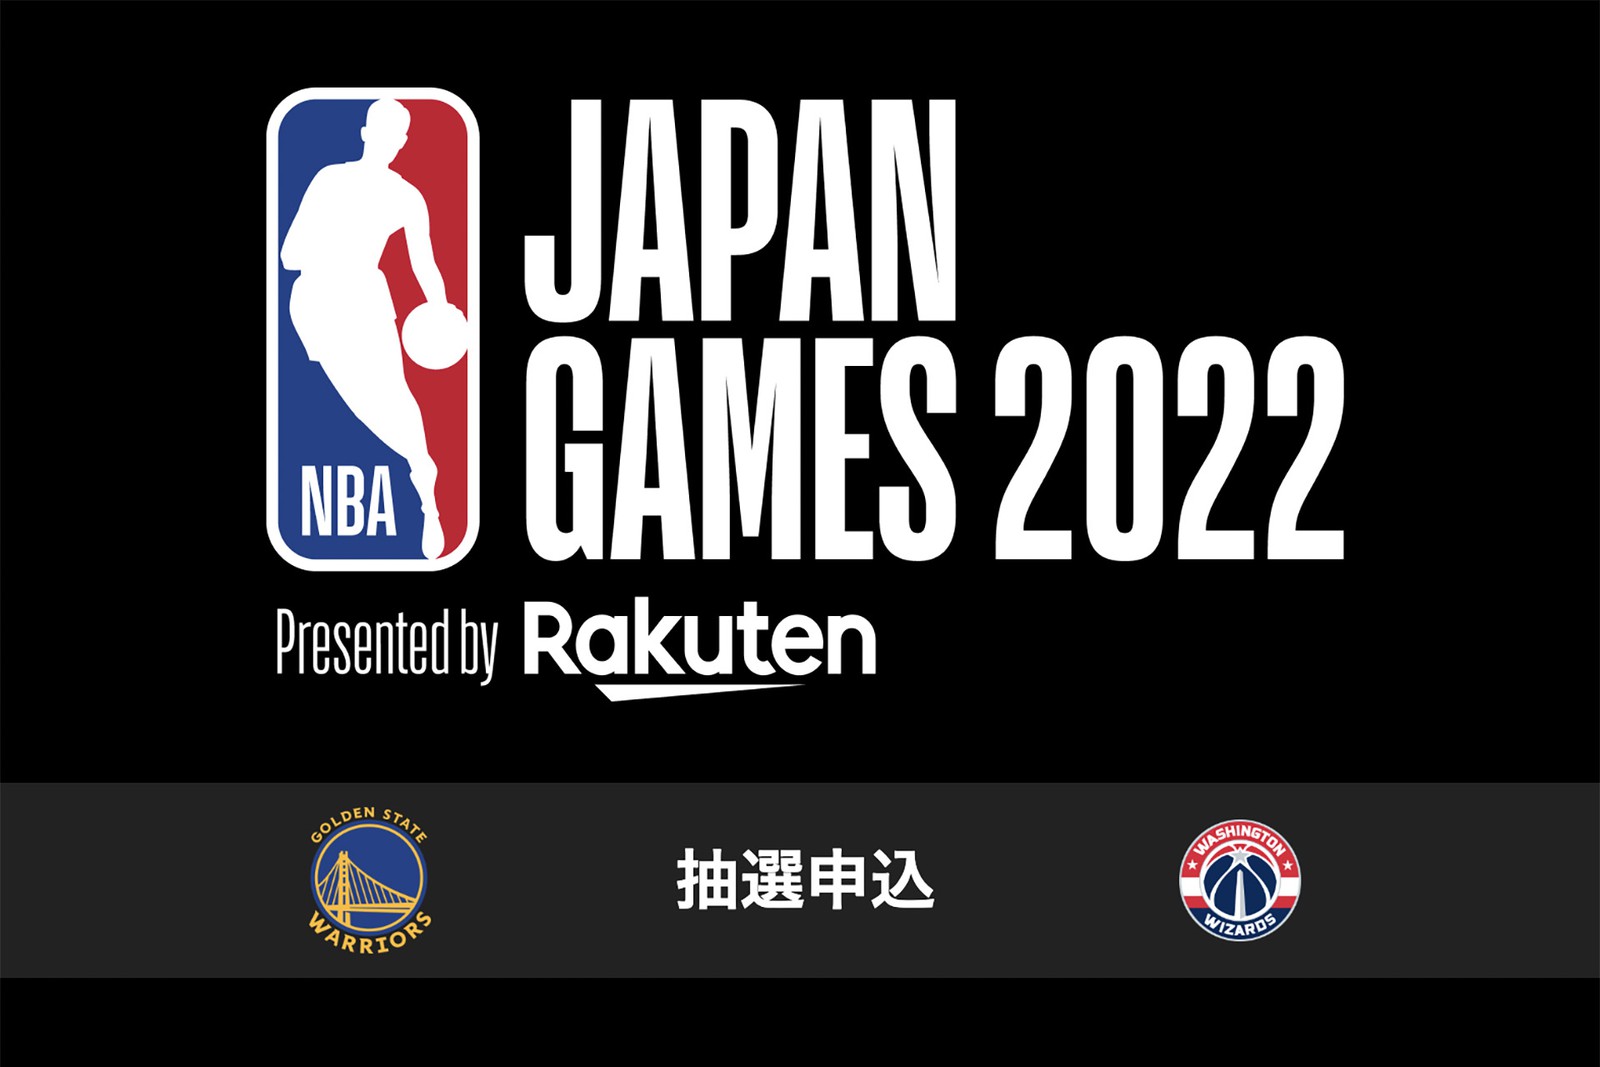 NBAのジャパンゲーム「ゴールデンステイト・ウォリアーズ vs ワシントン・ウィザーズ」